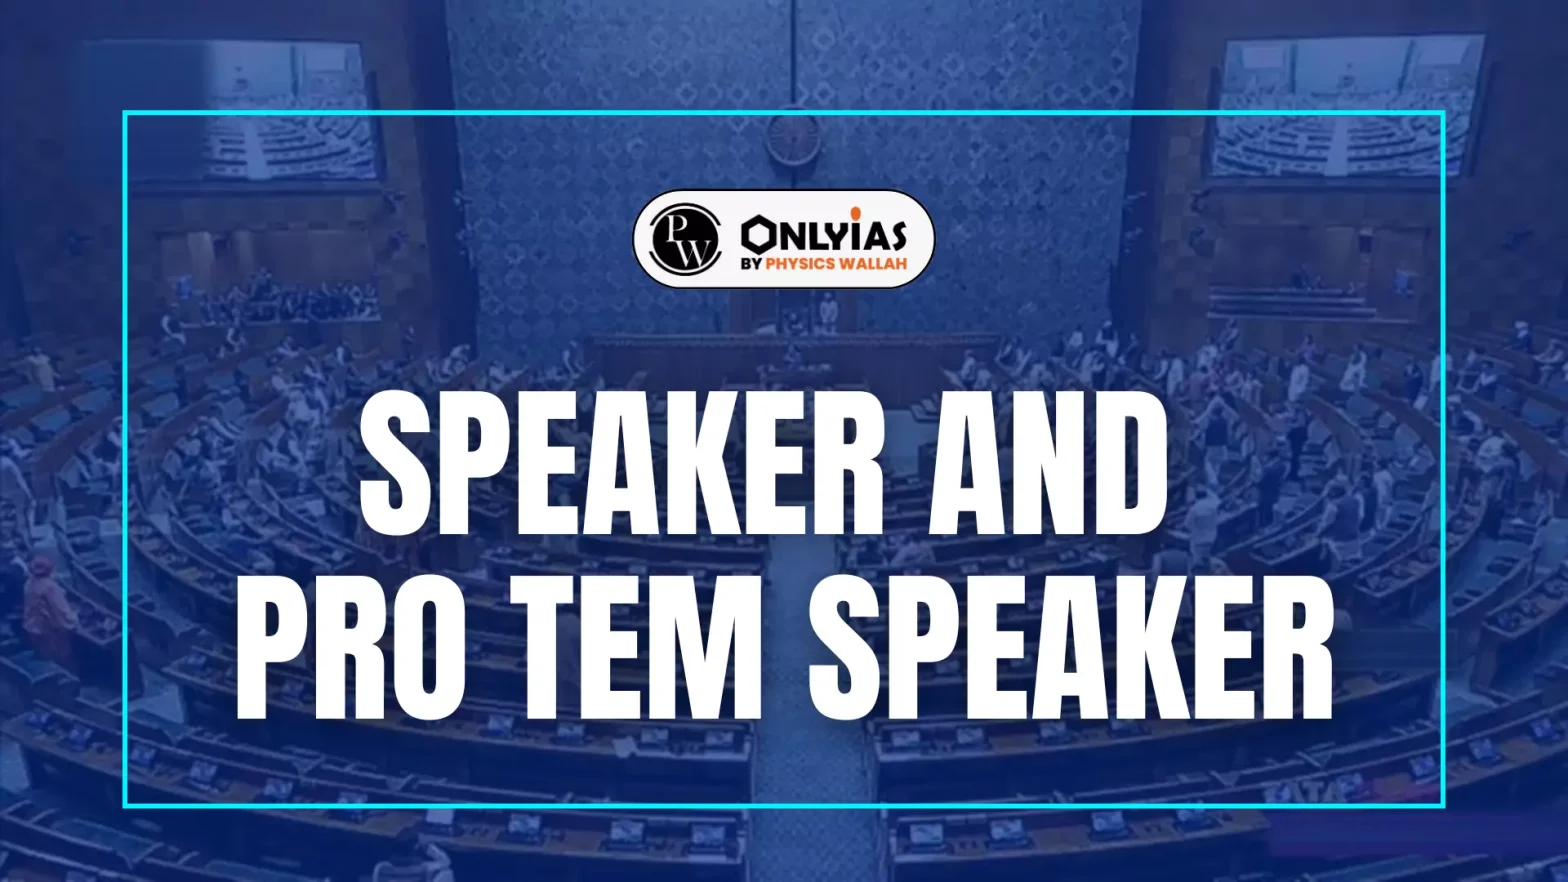 Speaker and Pro tem Speaker